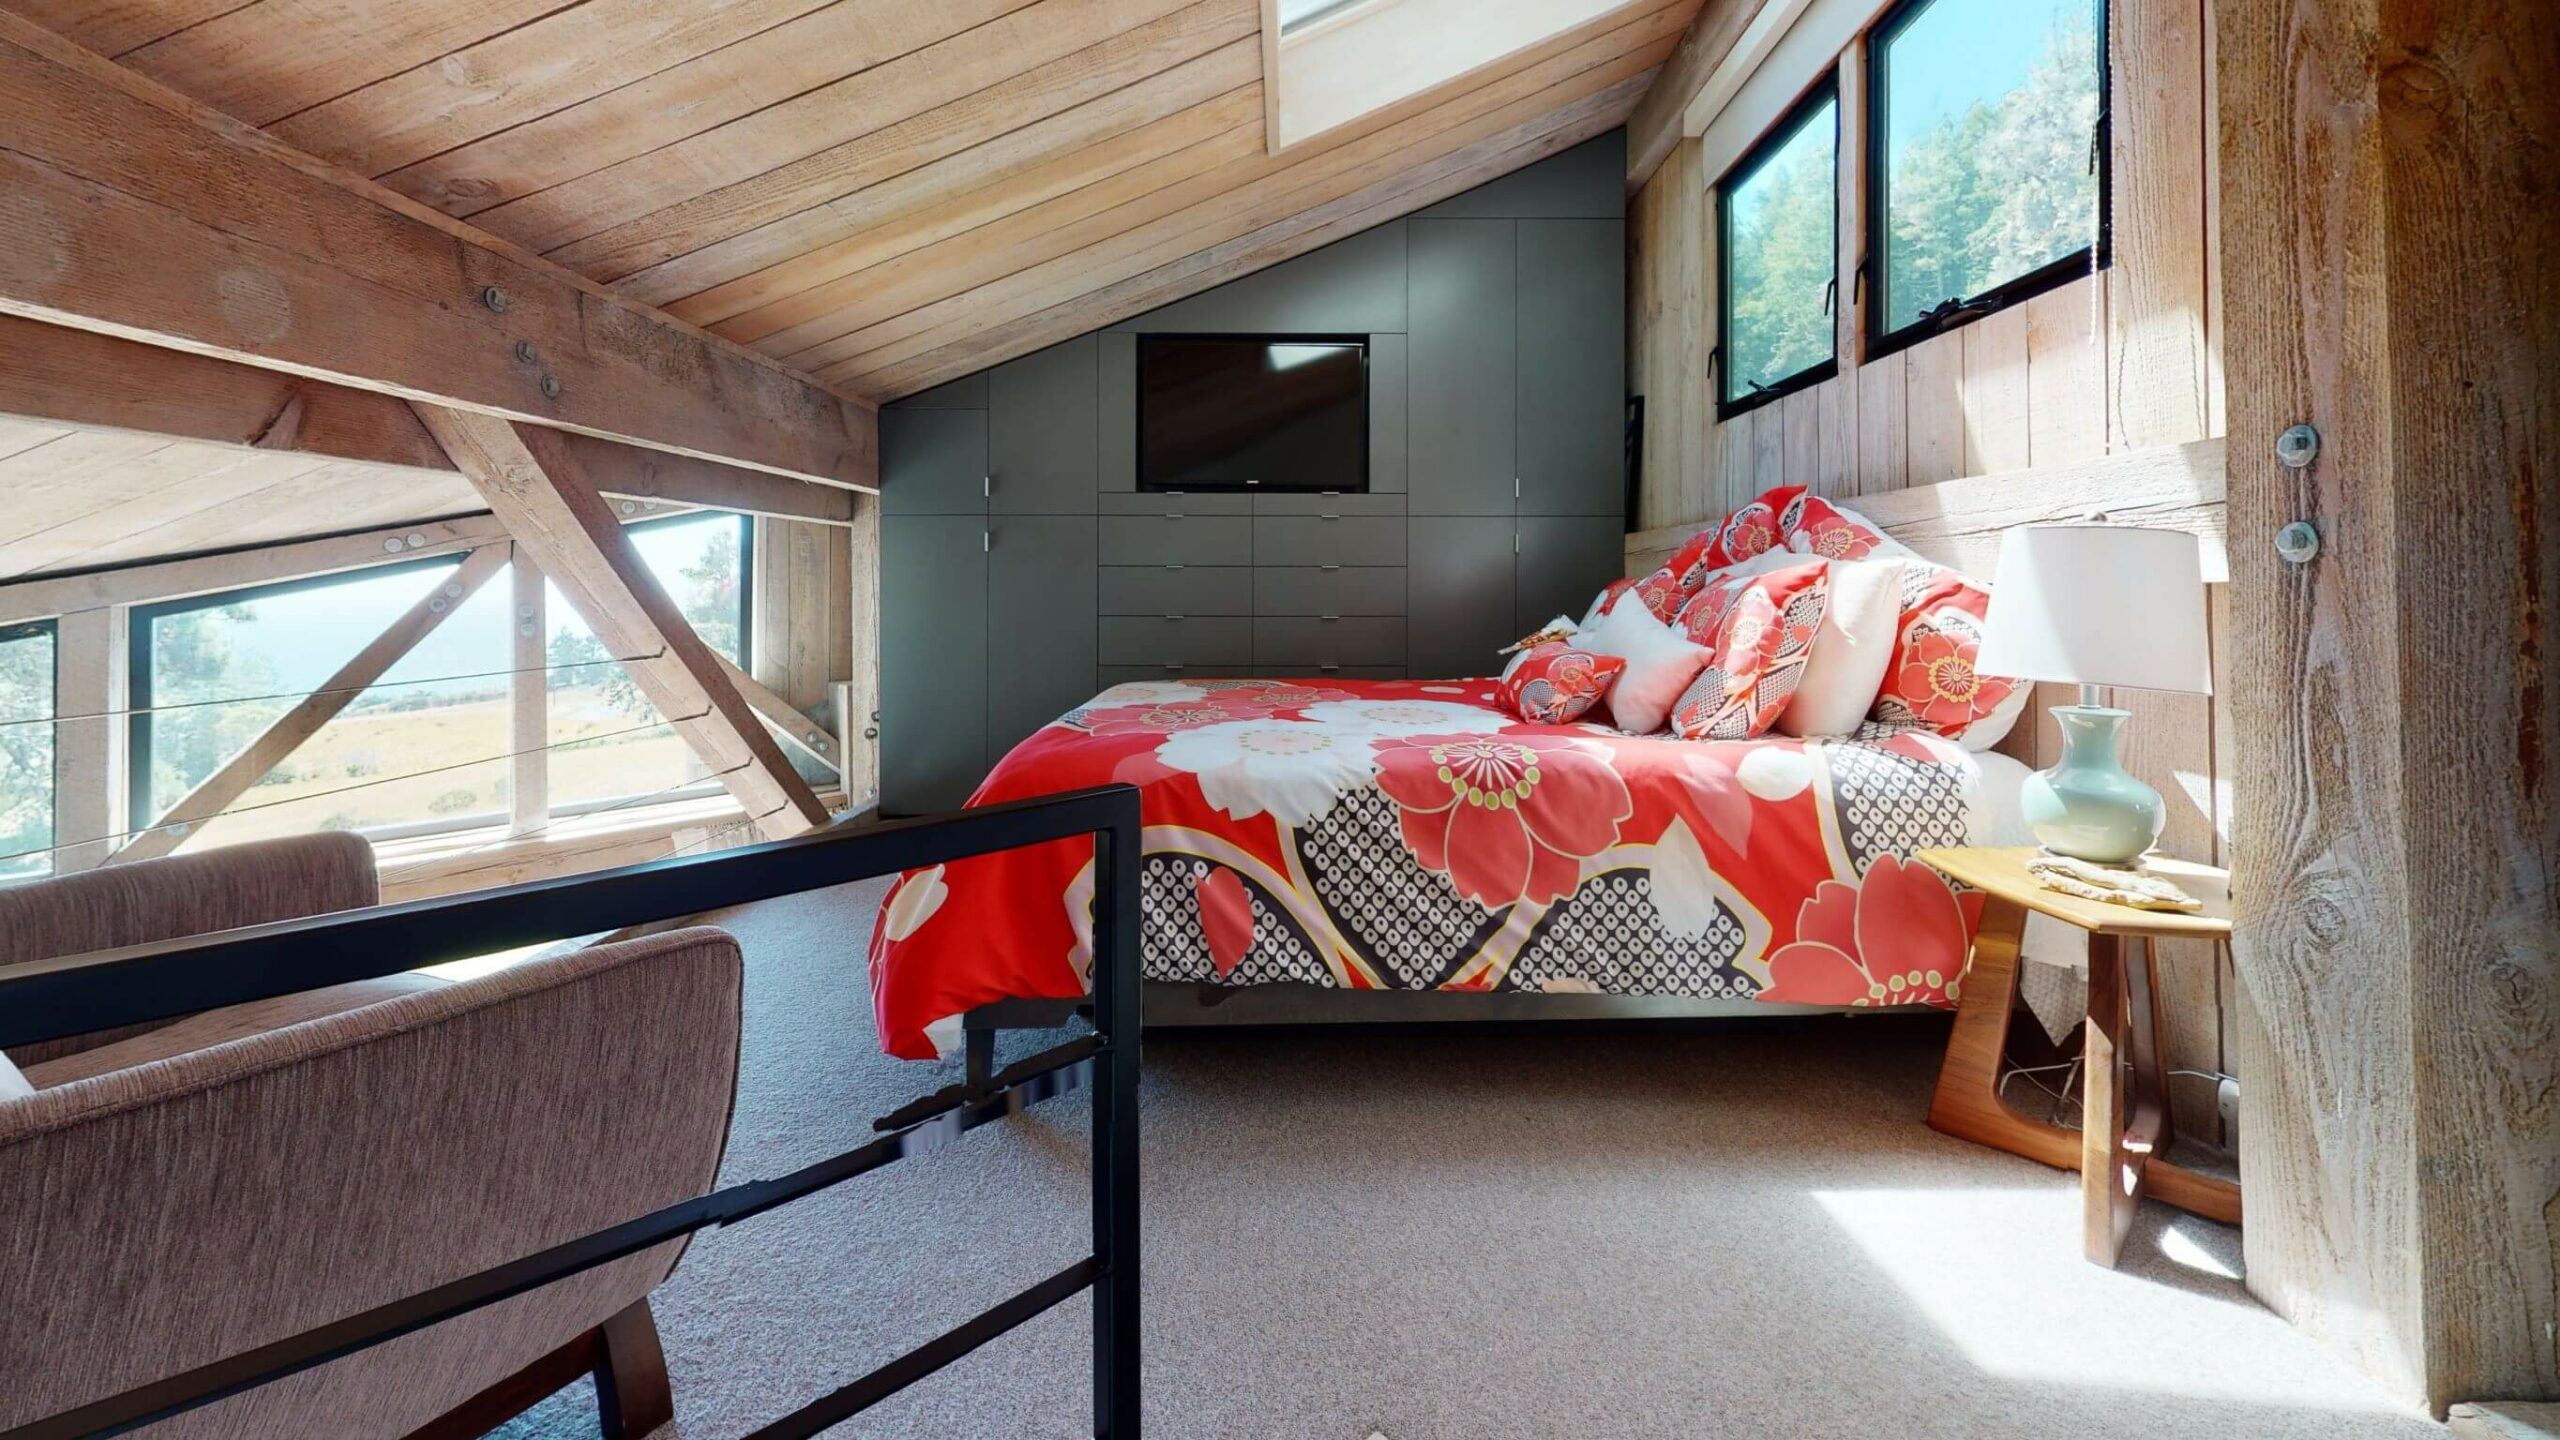 Seaview loft bedroom with wood ceilings